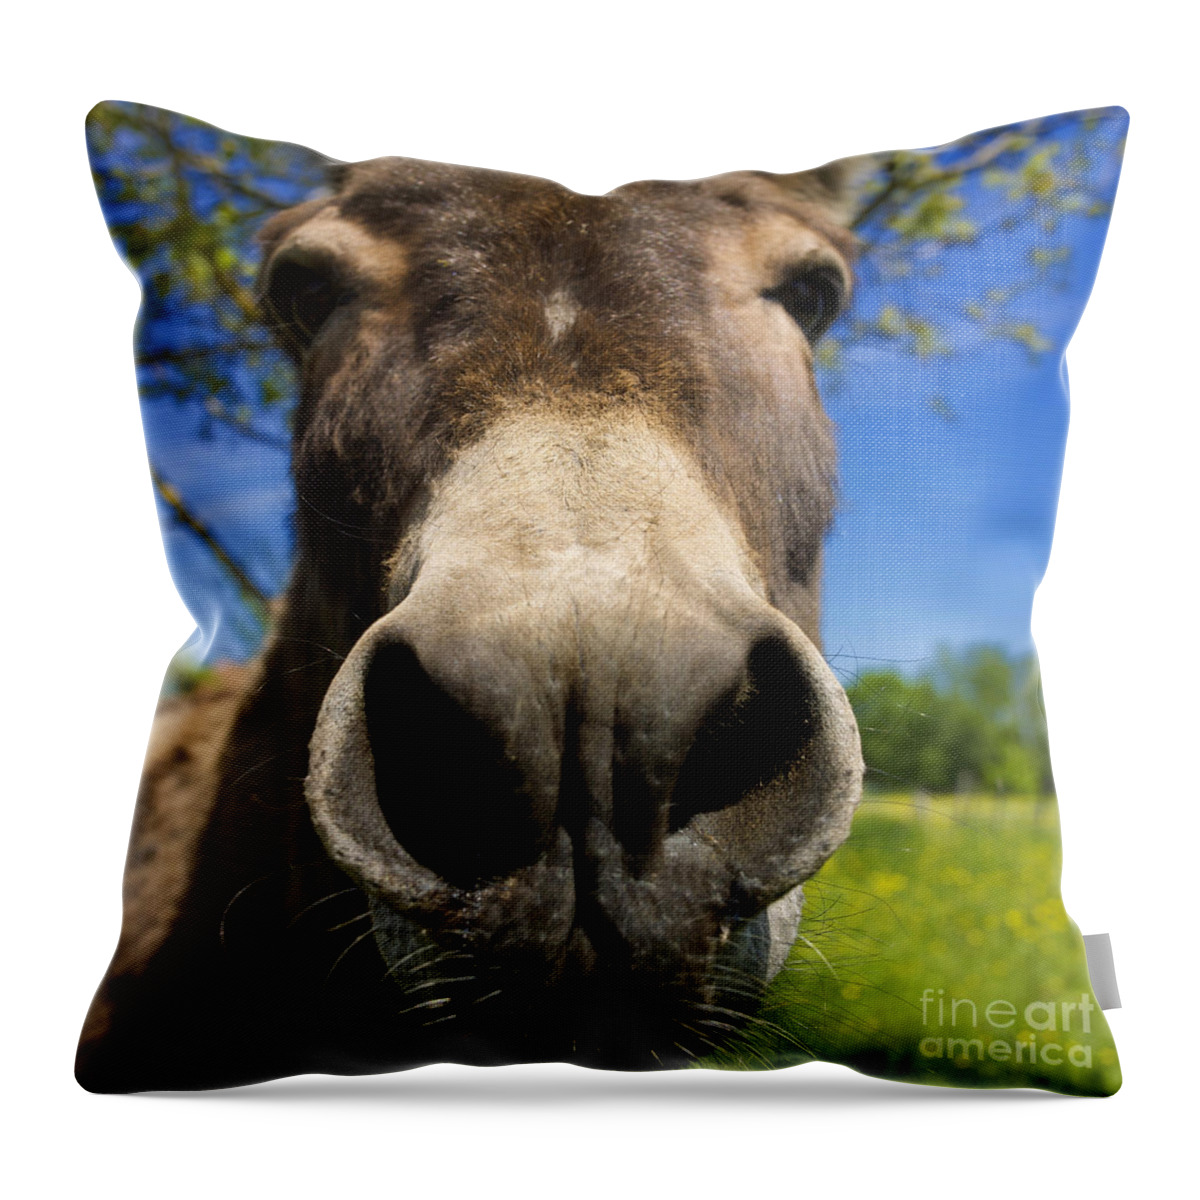 World Throw Pillow featuring the photograph Donkey #1 by Bernard Jaubert